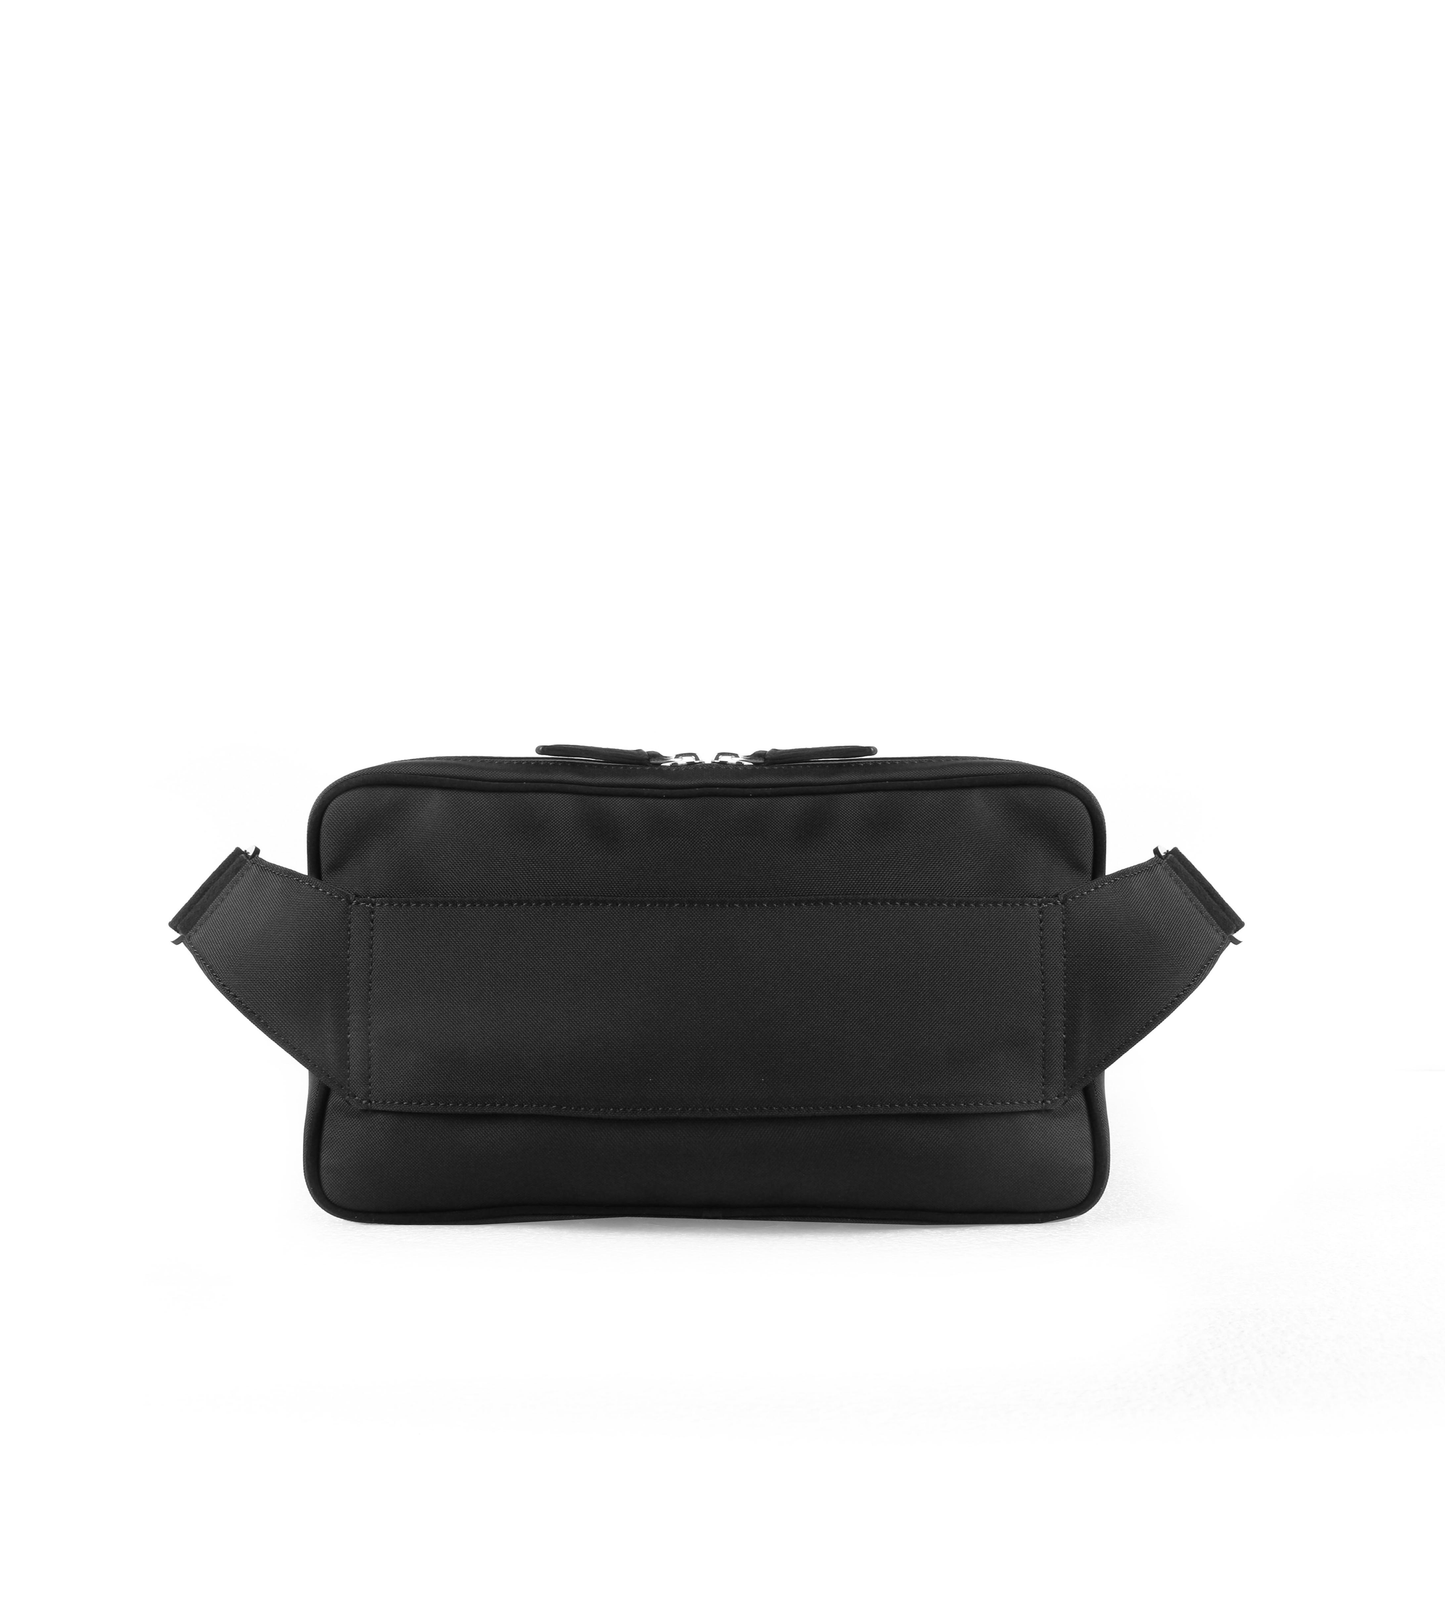 Zingolo Soft Carbon Fiber Crossbody Bag